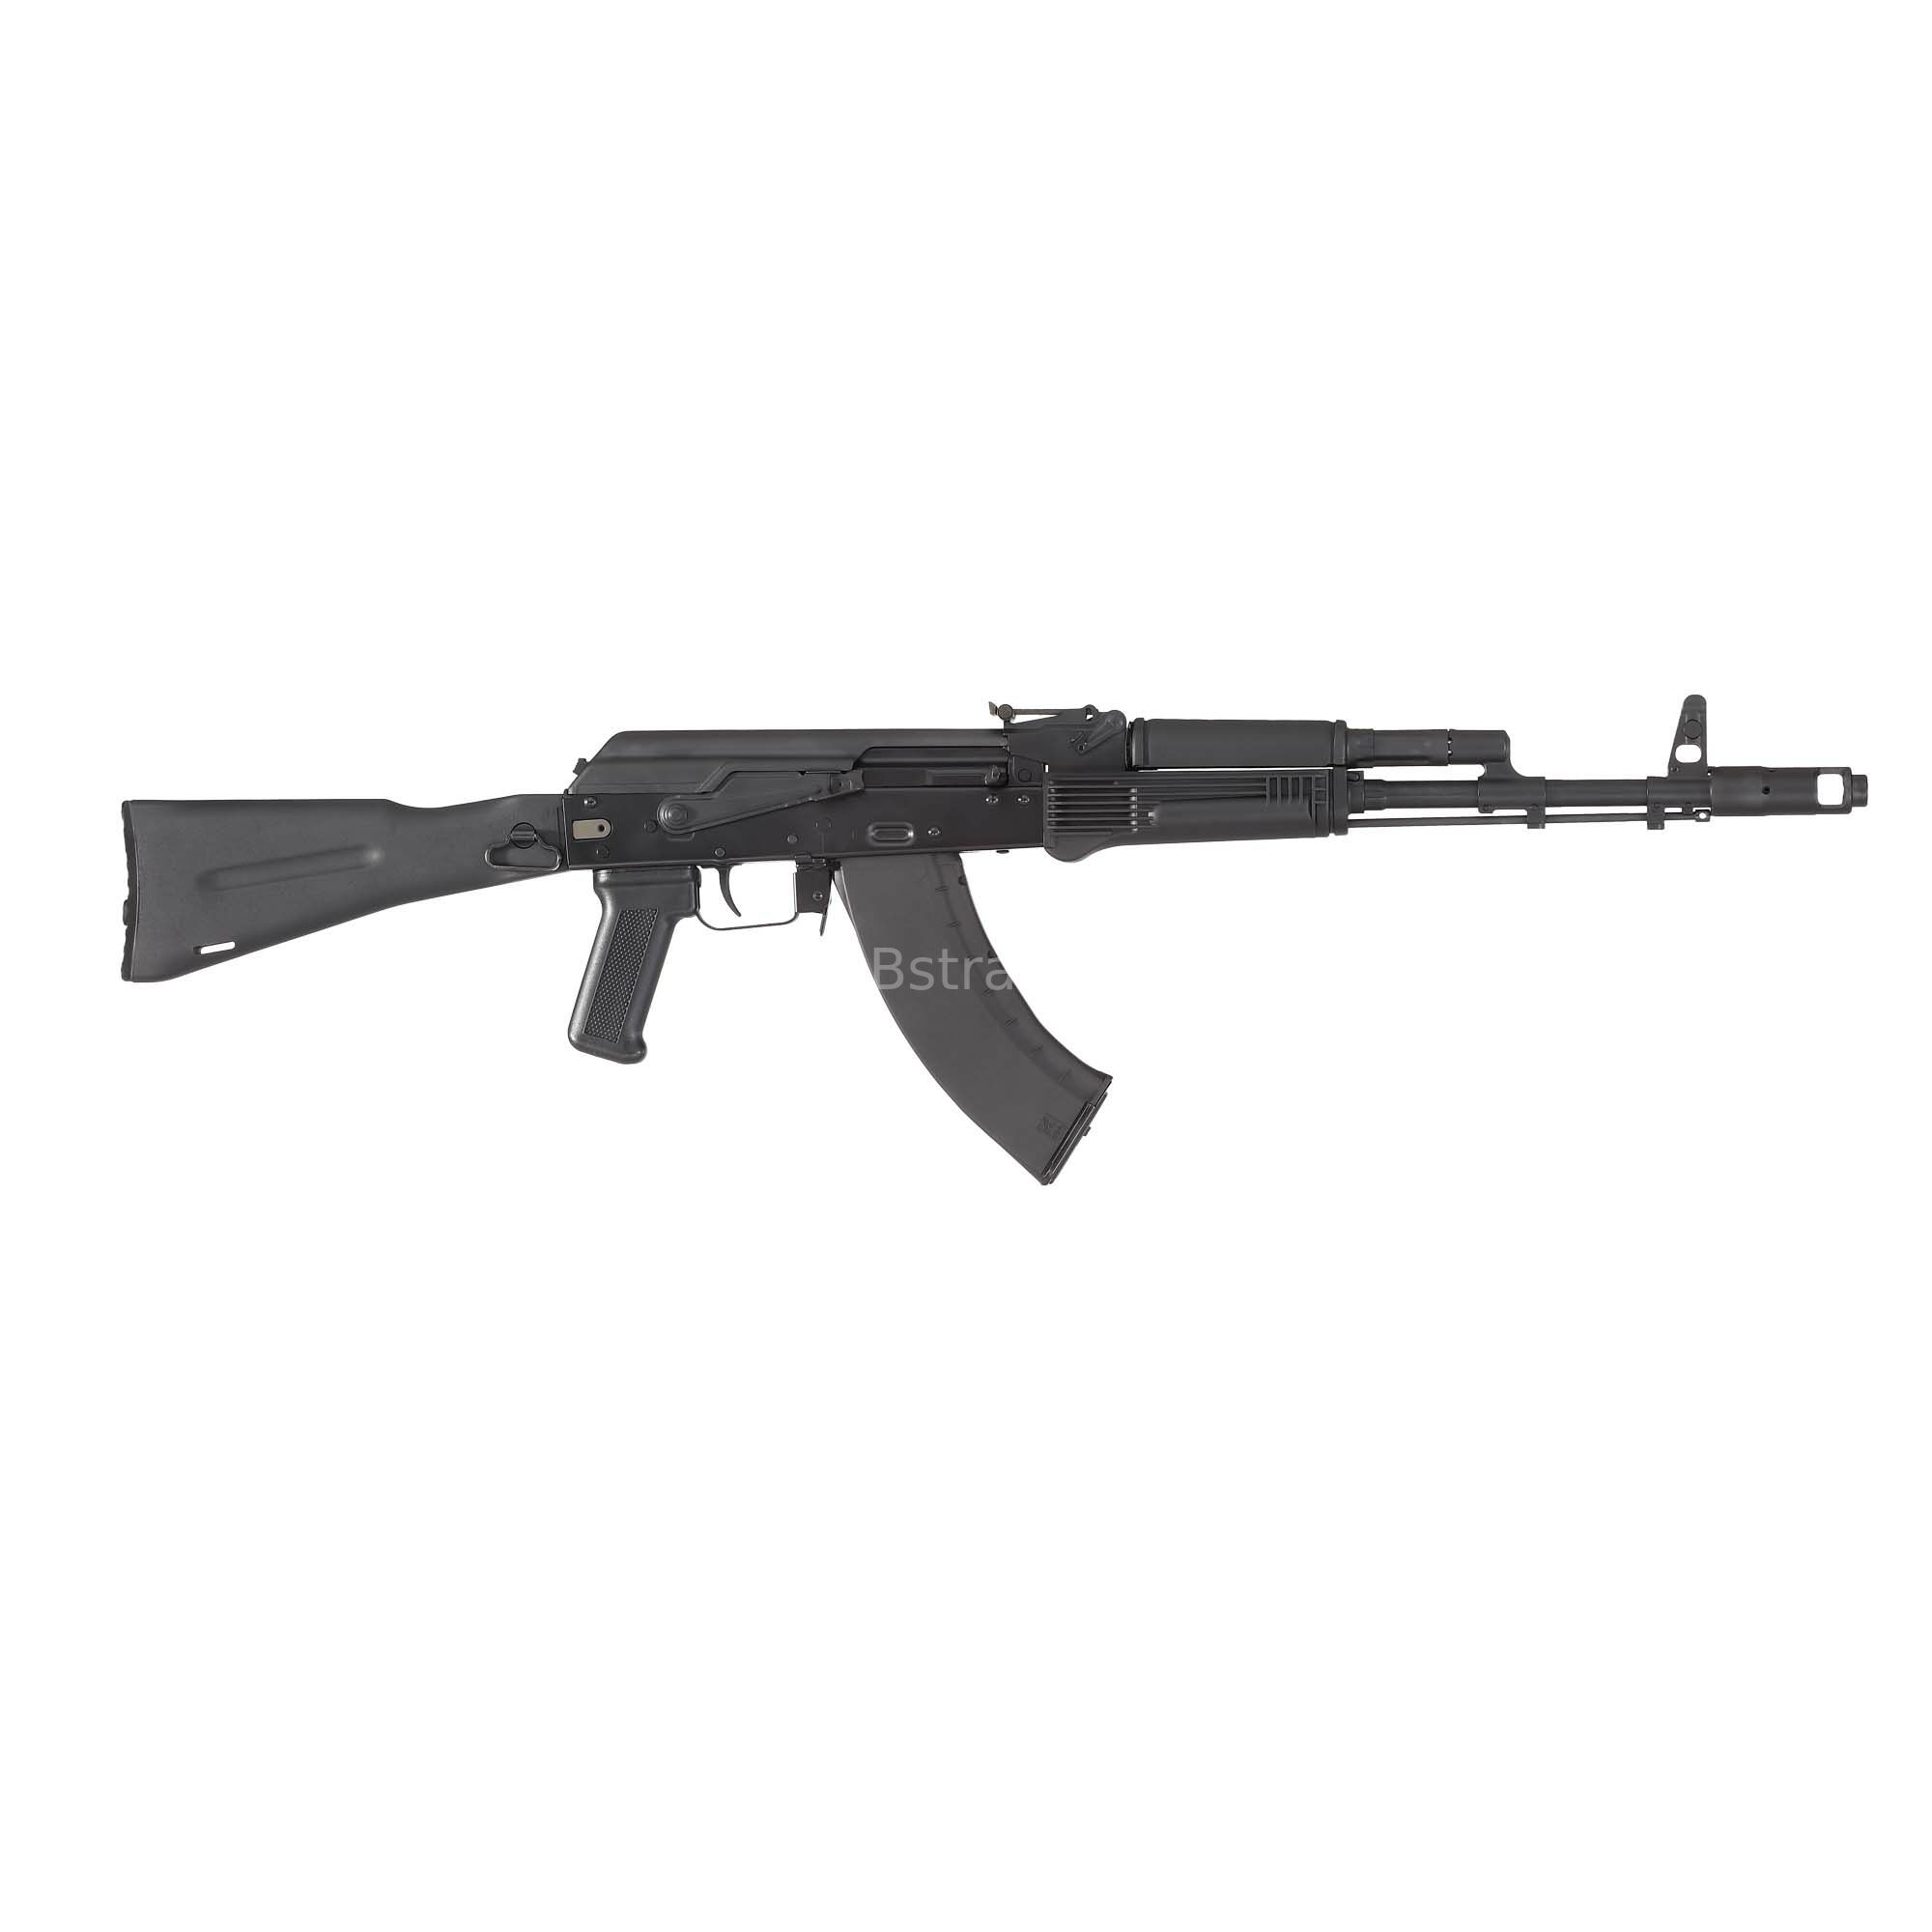 Kalashnikov USA - KR103 SFS mit Klappschaft 7,62x39 1/1 ziviler Nachbau der legendären AK103 - System AK47 AKM AK74 - KR-103 SFS – 7.62x39mm Side Folding Rifle – Cold Hammer Forged